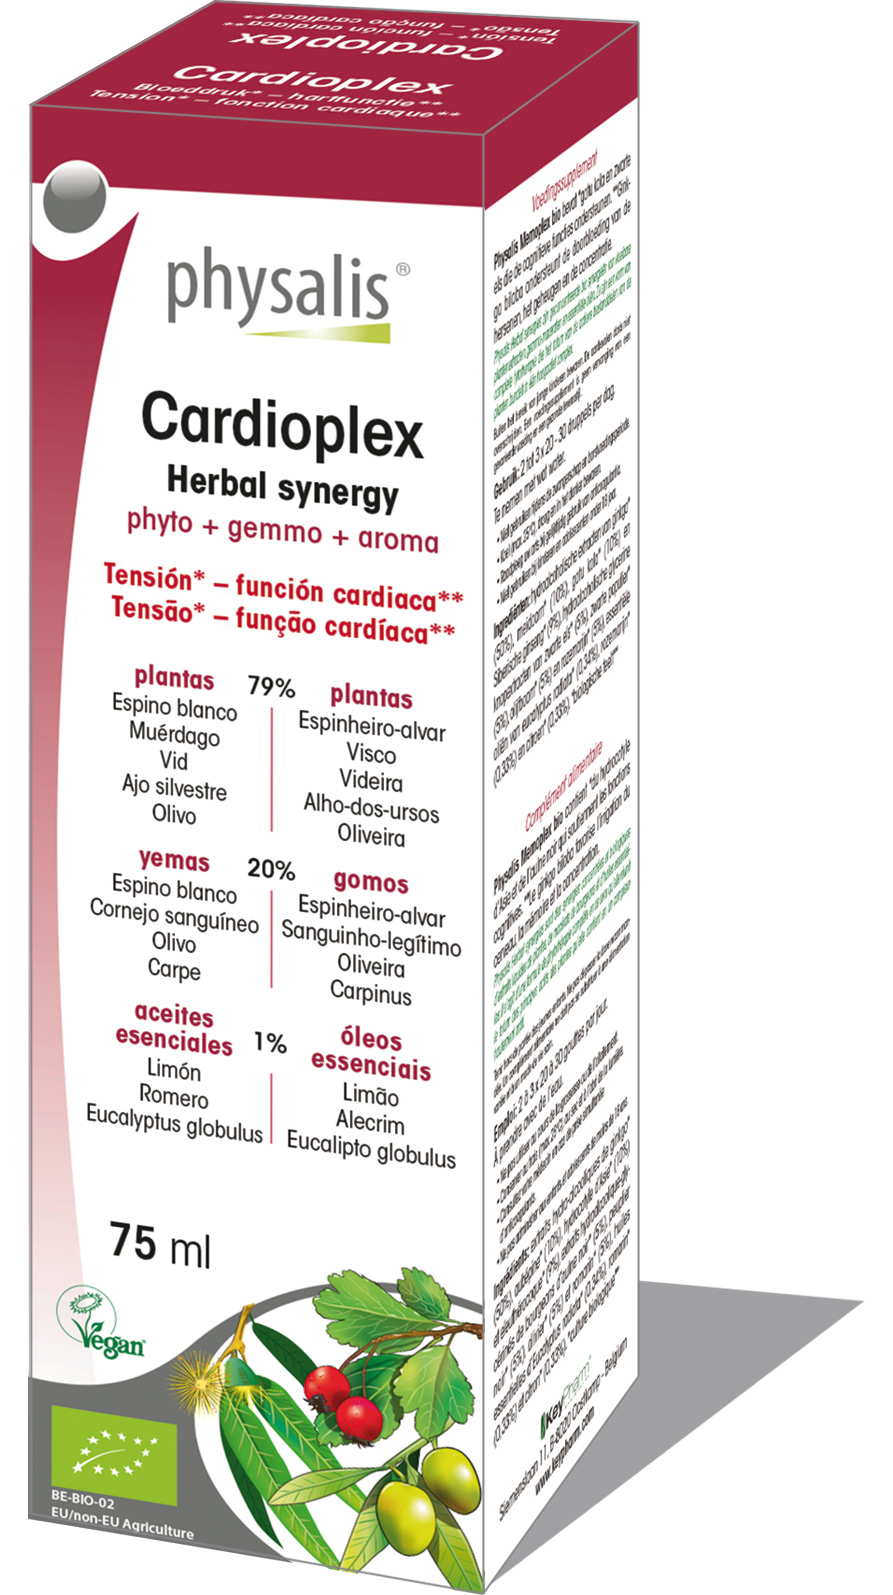 Cardioplex - Herbal synergy